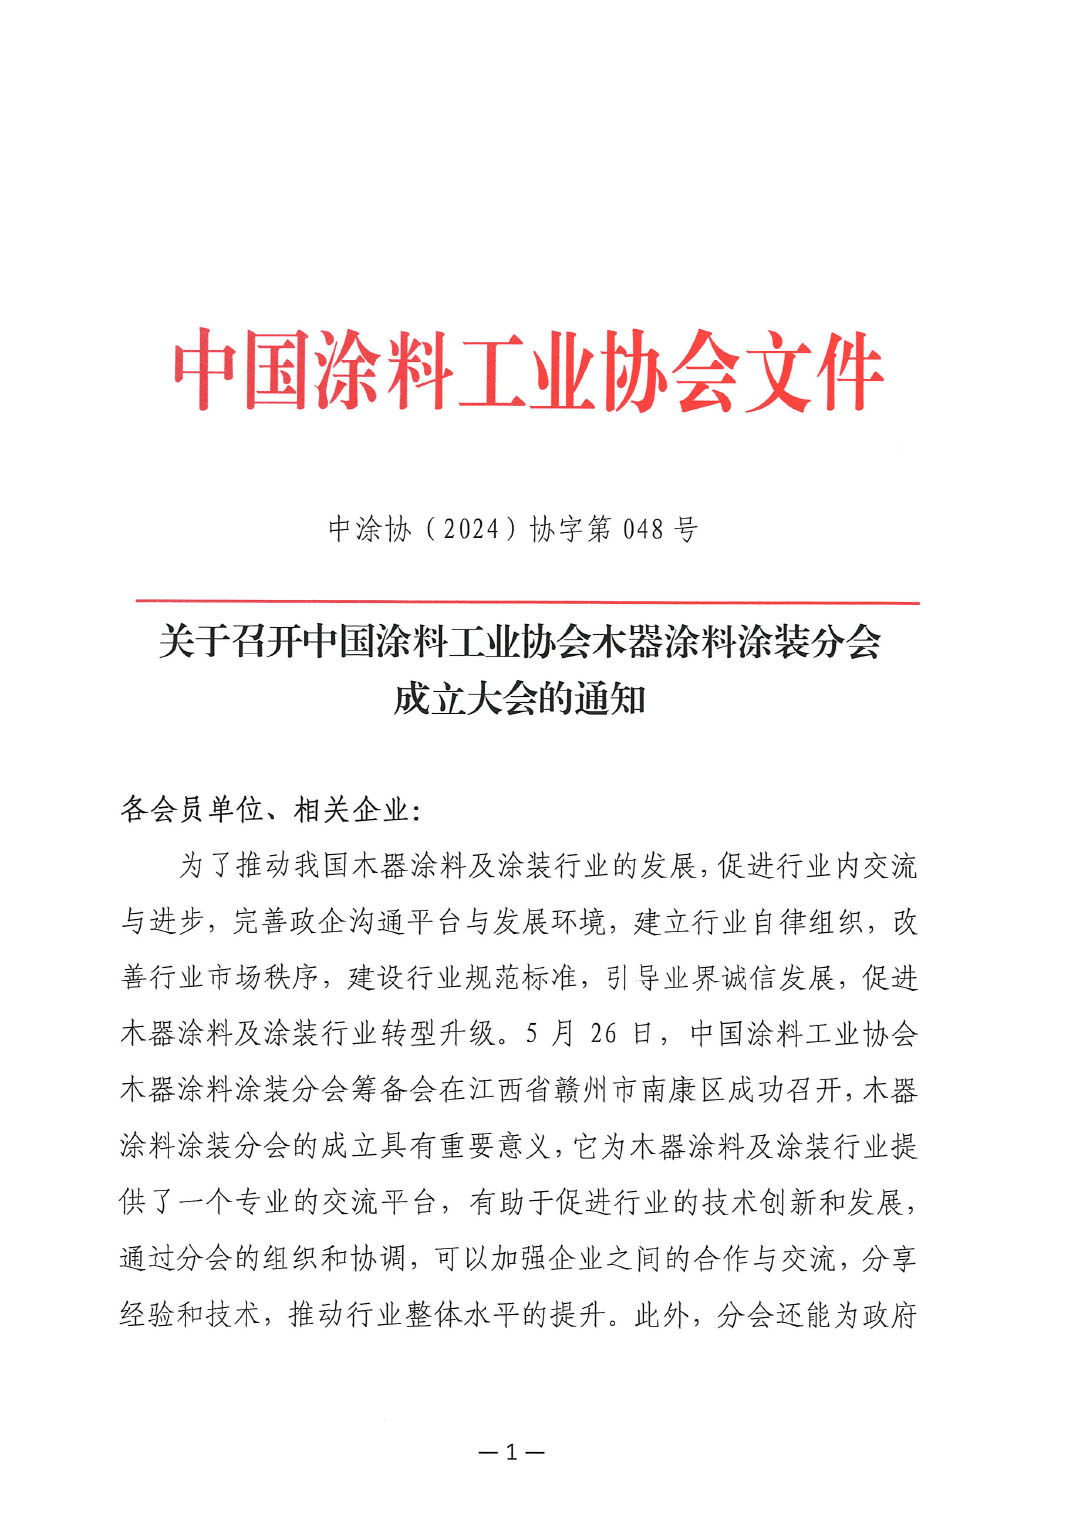 关于召开中国涂料工业协会木器涂料分会成立大会的通知-1